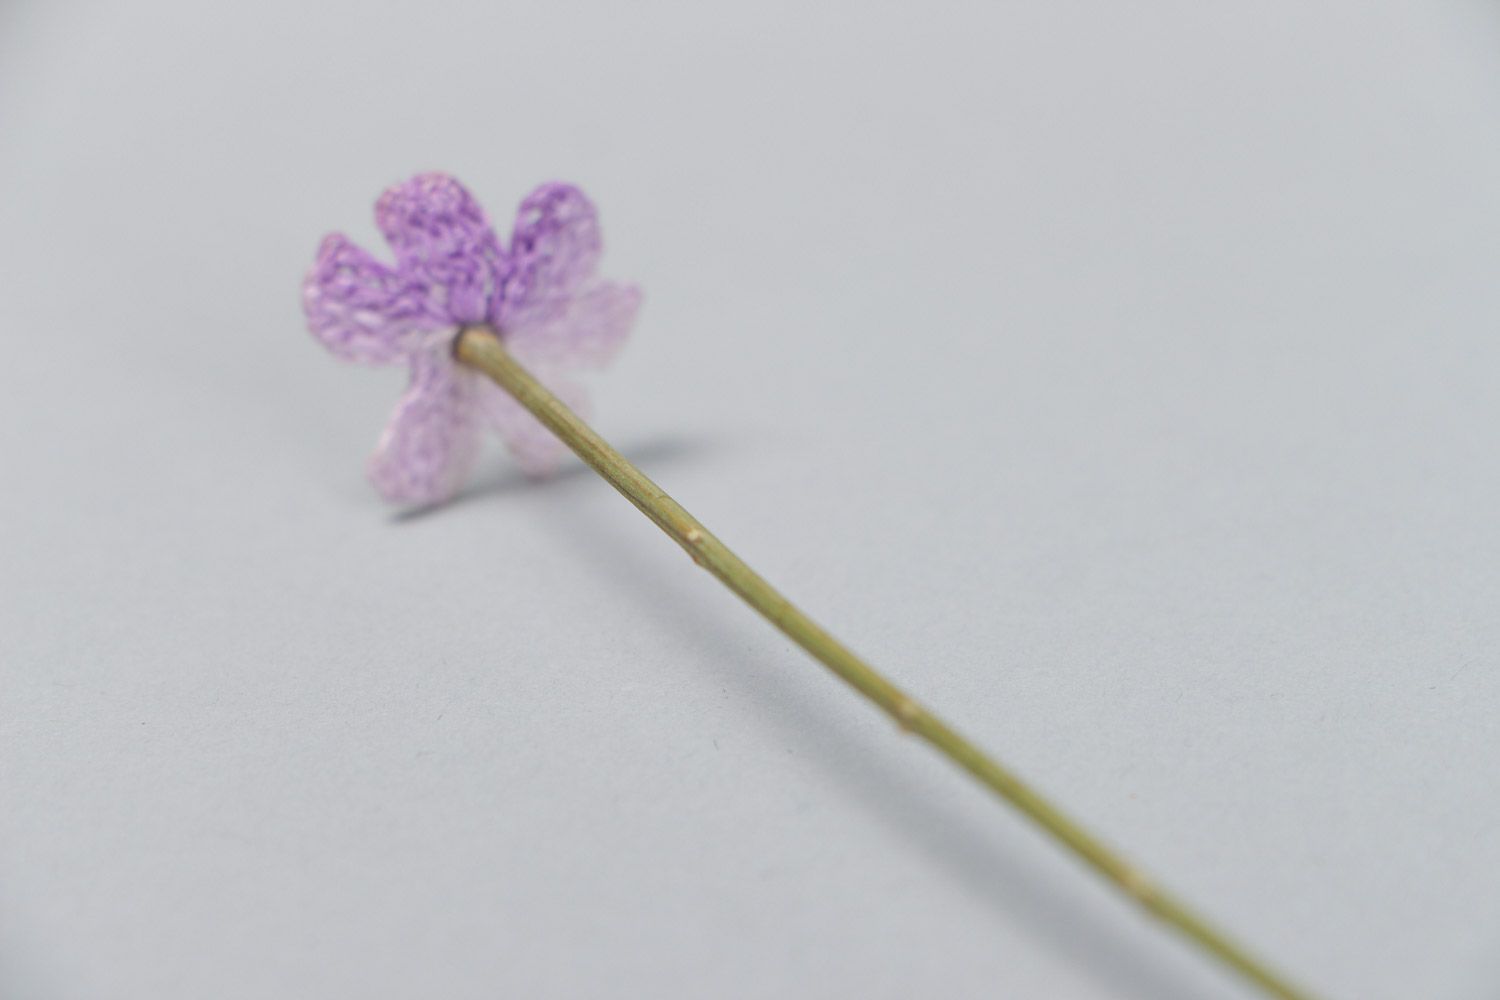 Цветок вязаный крючком на стебле акации ручной работы для декора дома или офиса фото 4